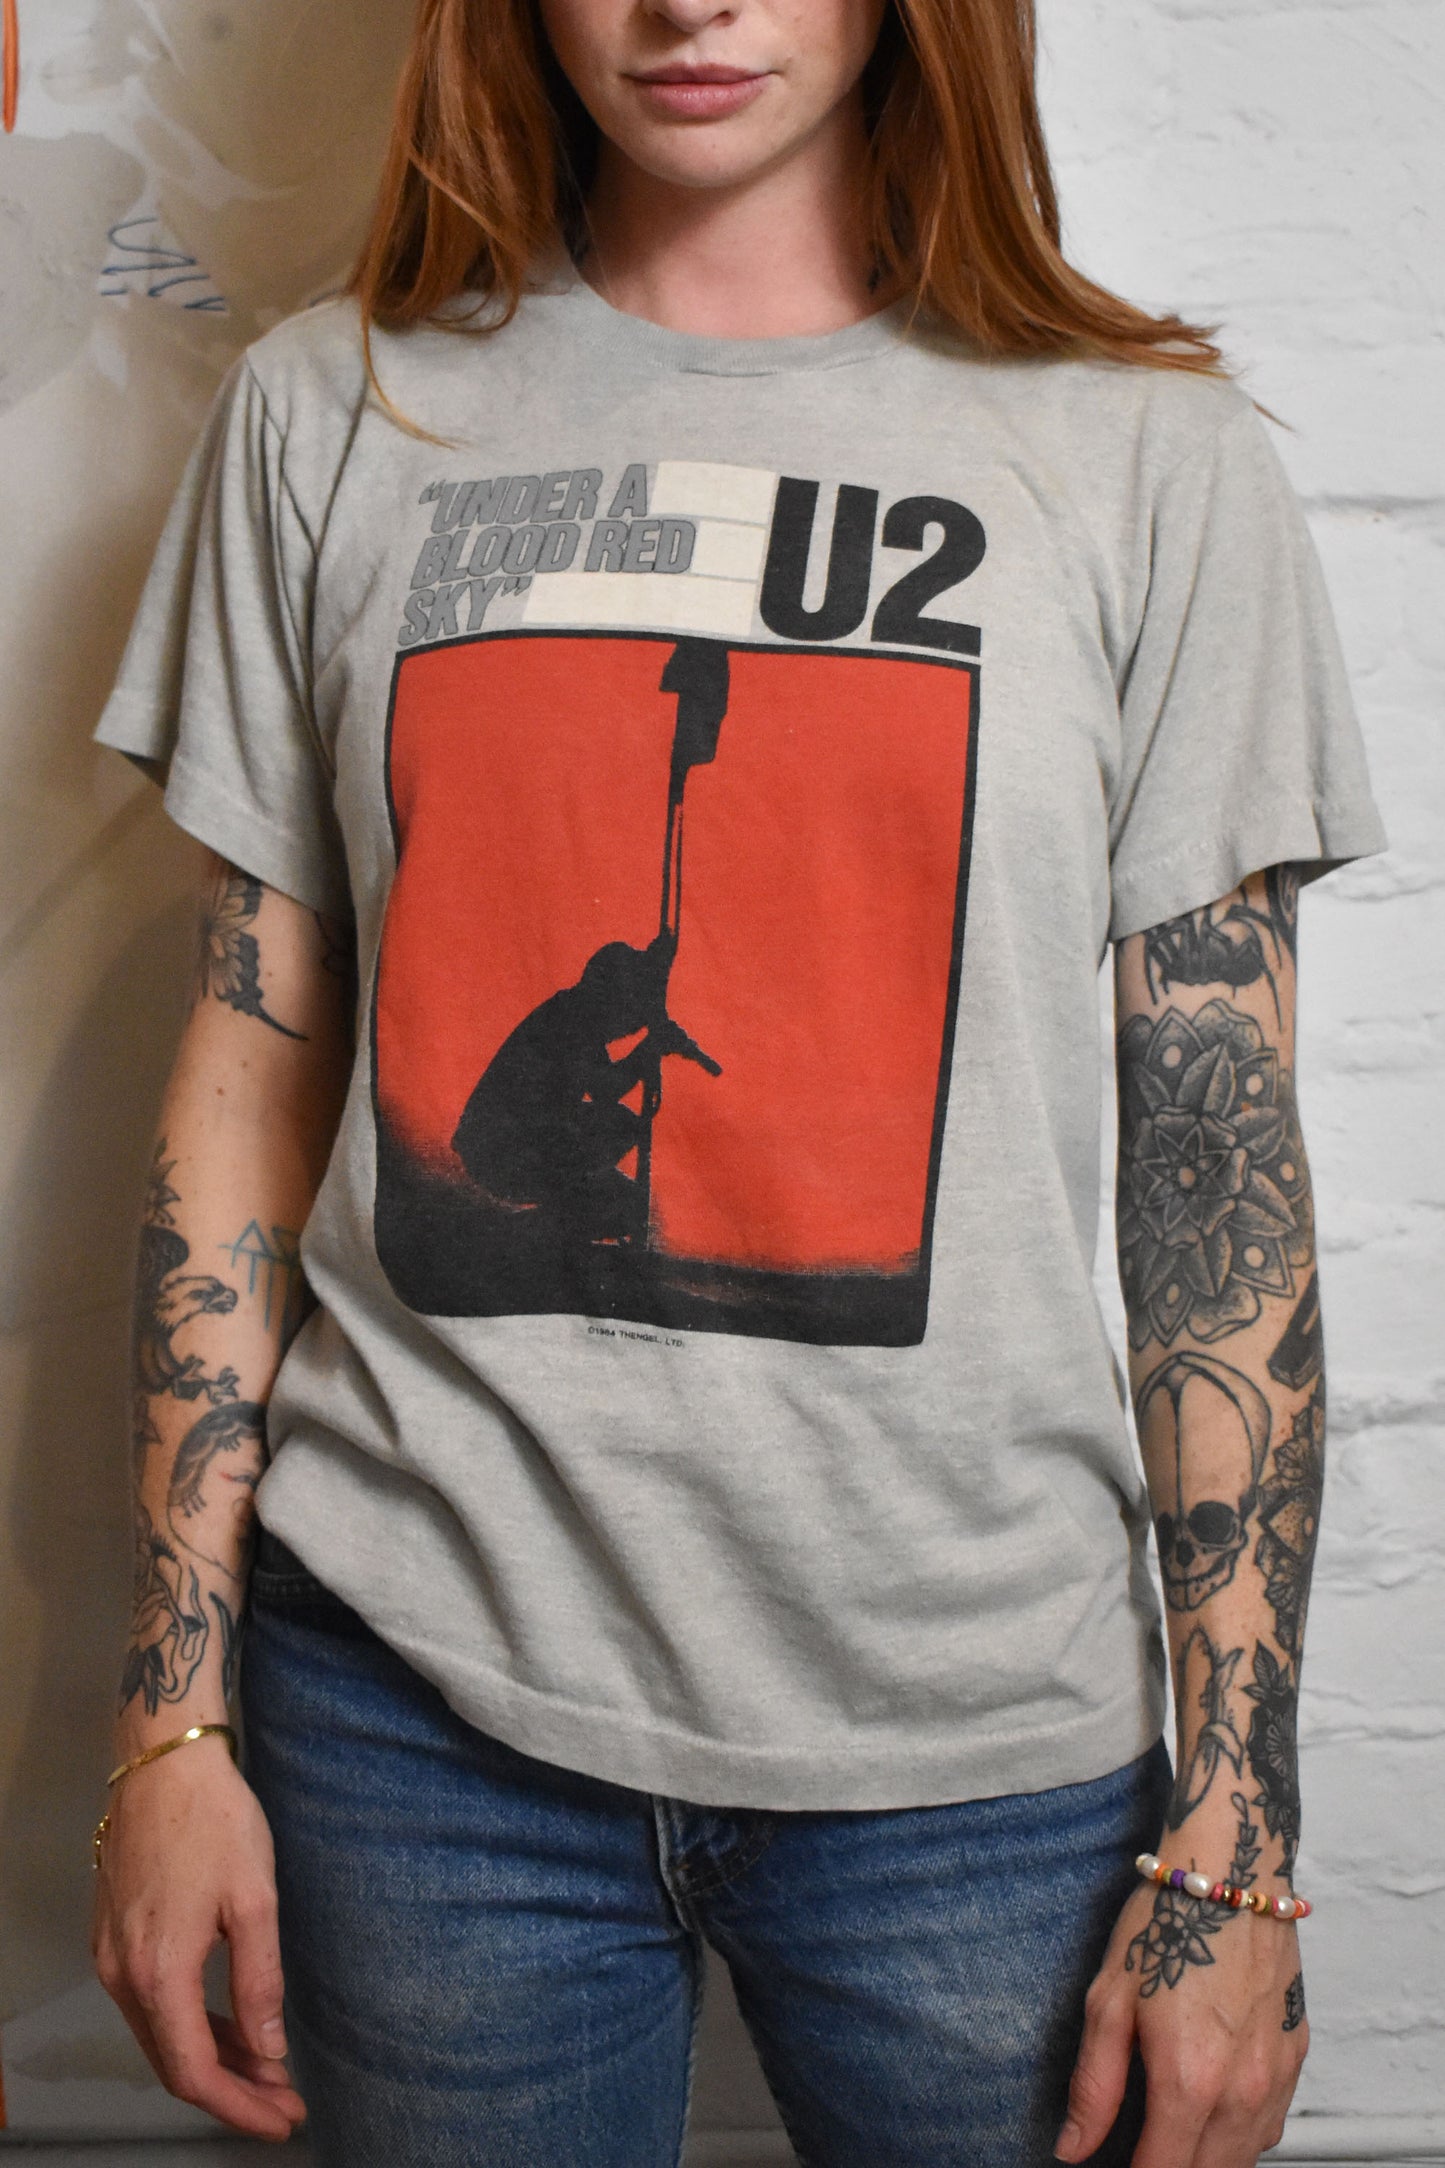 Vintage 1984 "U2 Under A Blood Red Sky" T-shirt